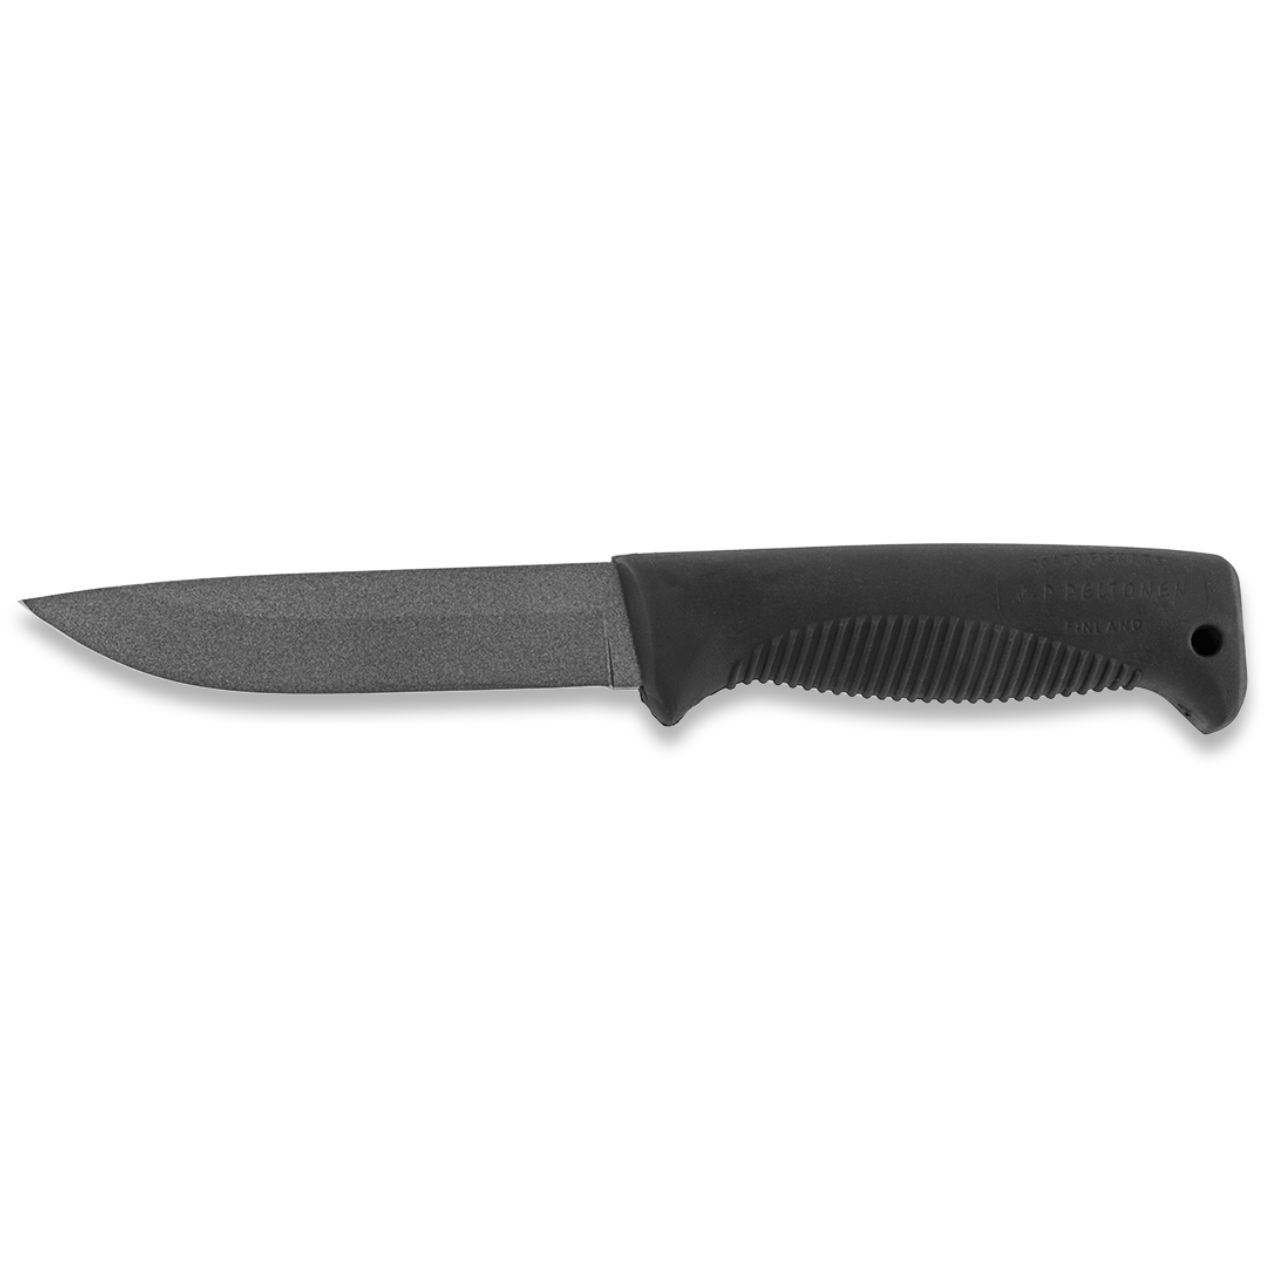 Peltonen Knives M07 12.5 cm blade Finnish Ranger Knife